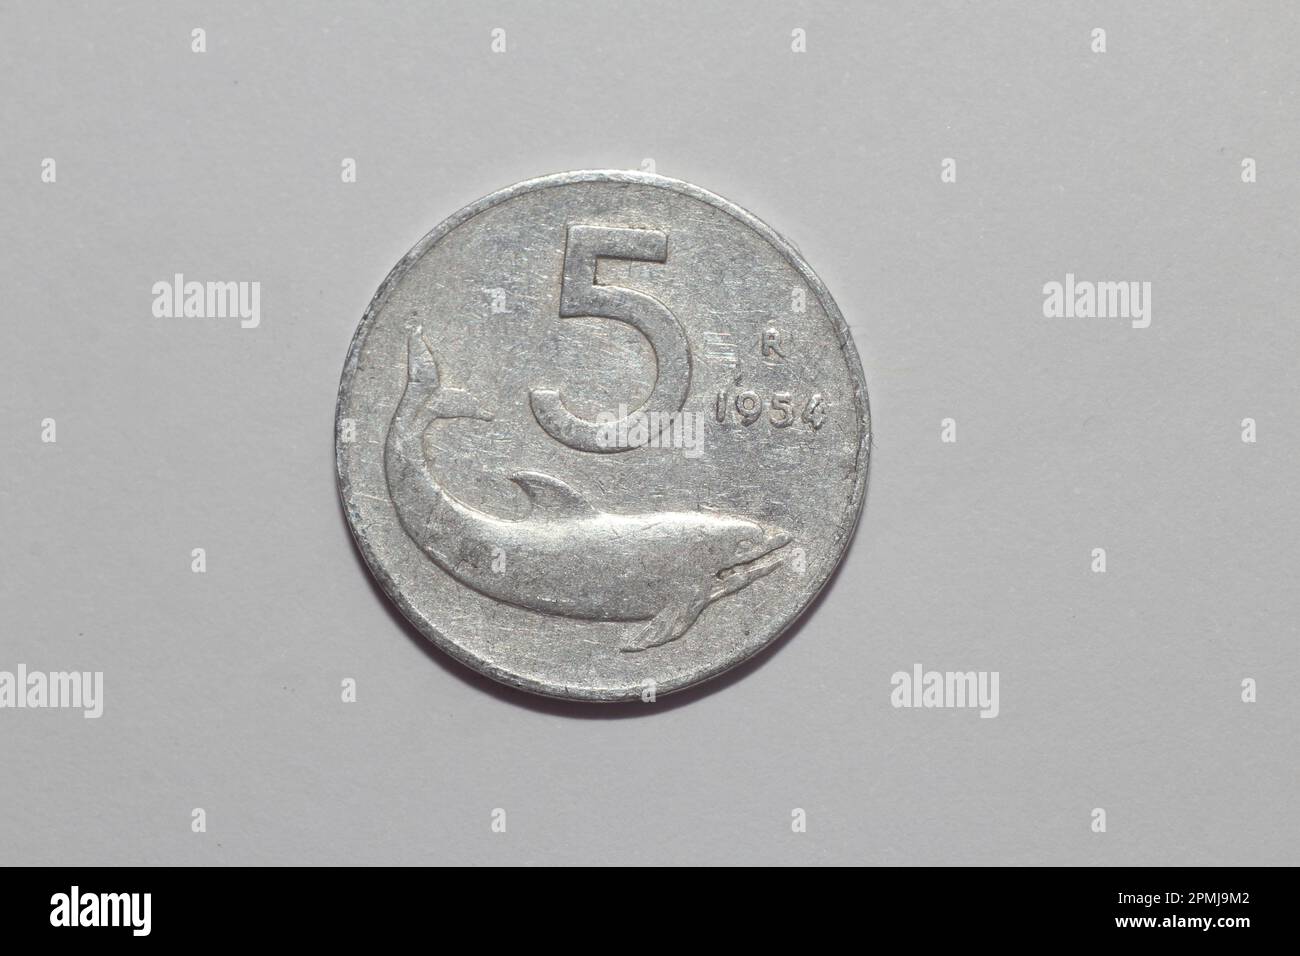 Pièce de 5 lires, pièce de monnaie italienne vintage. Banque D'Images